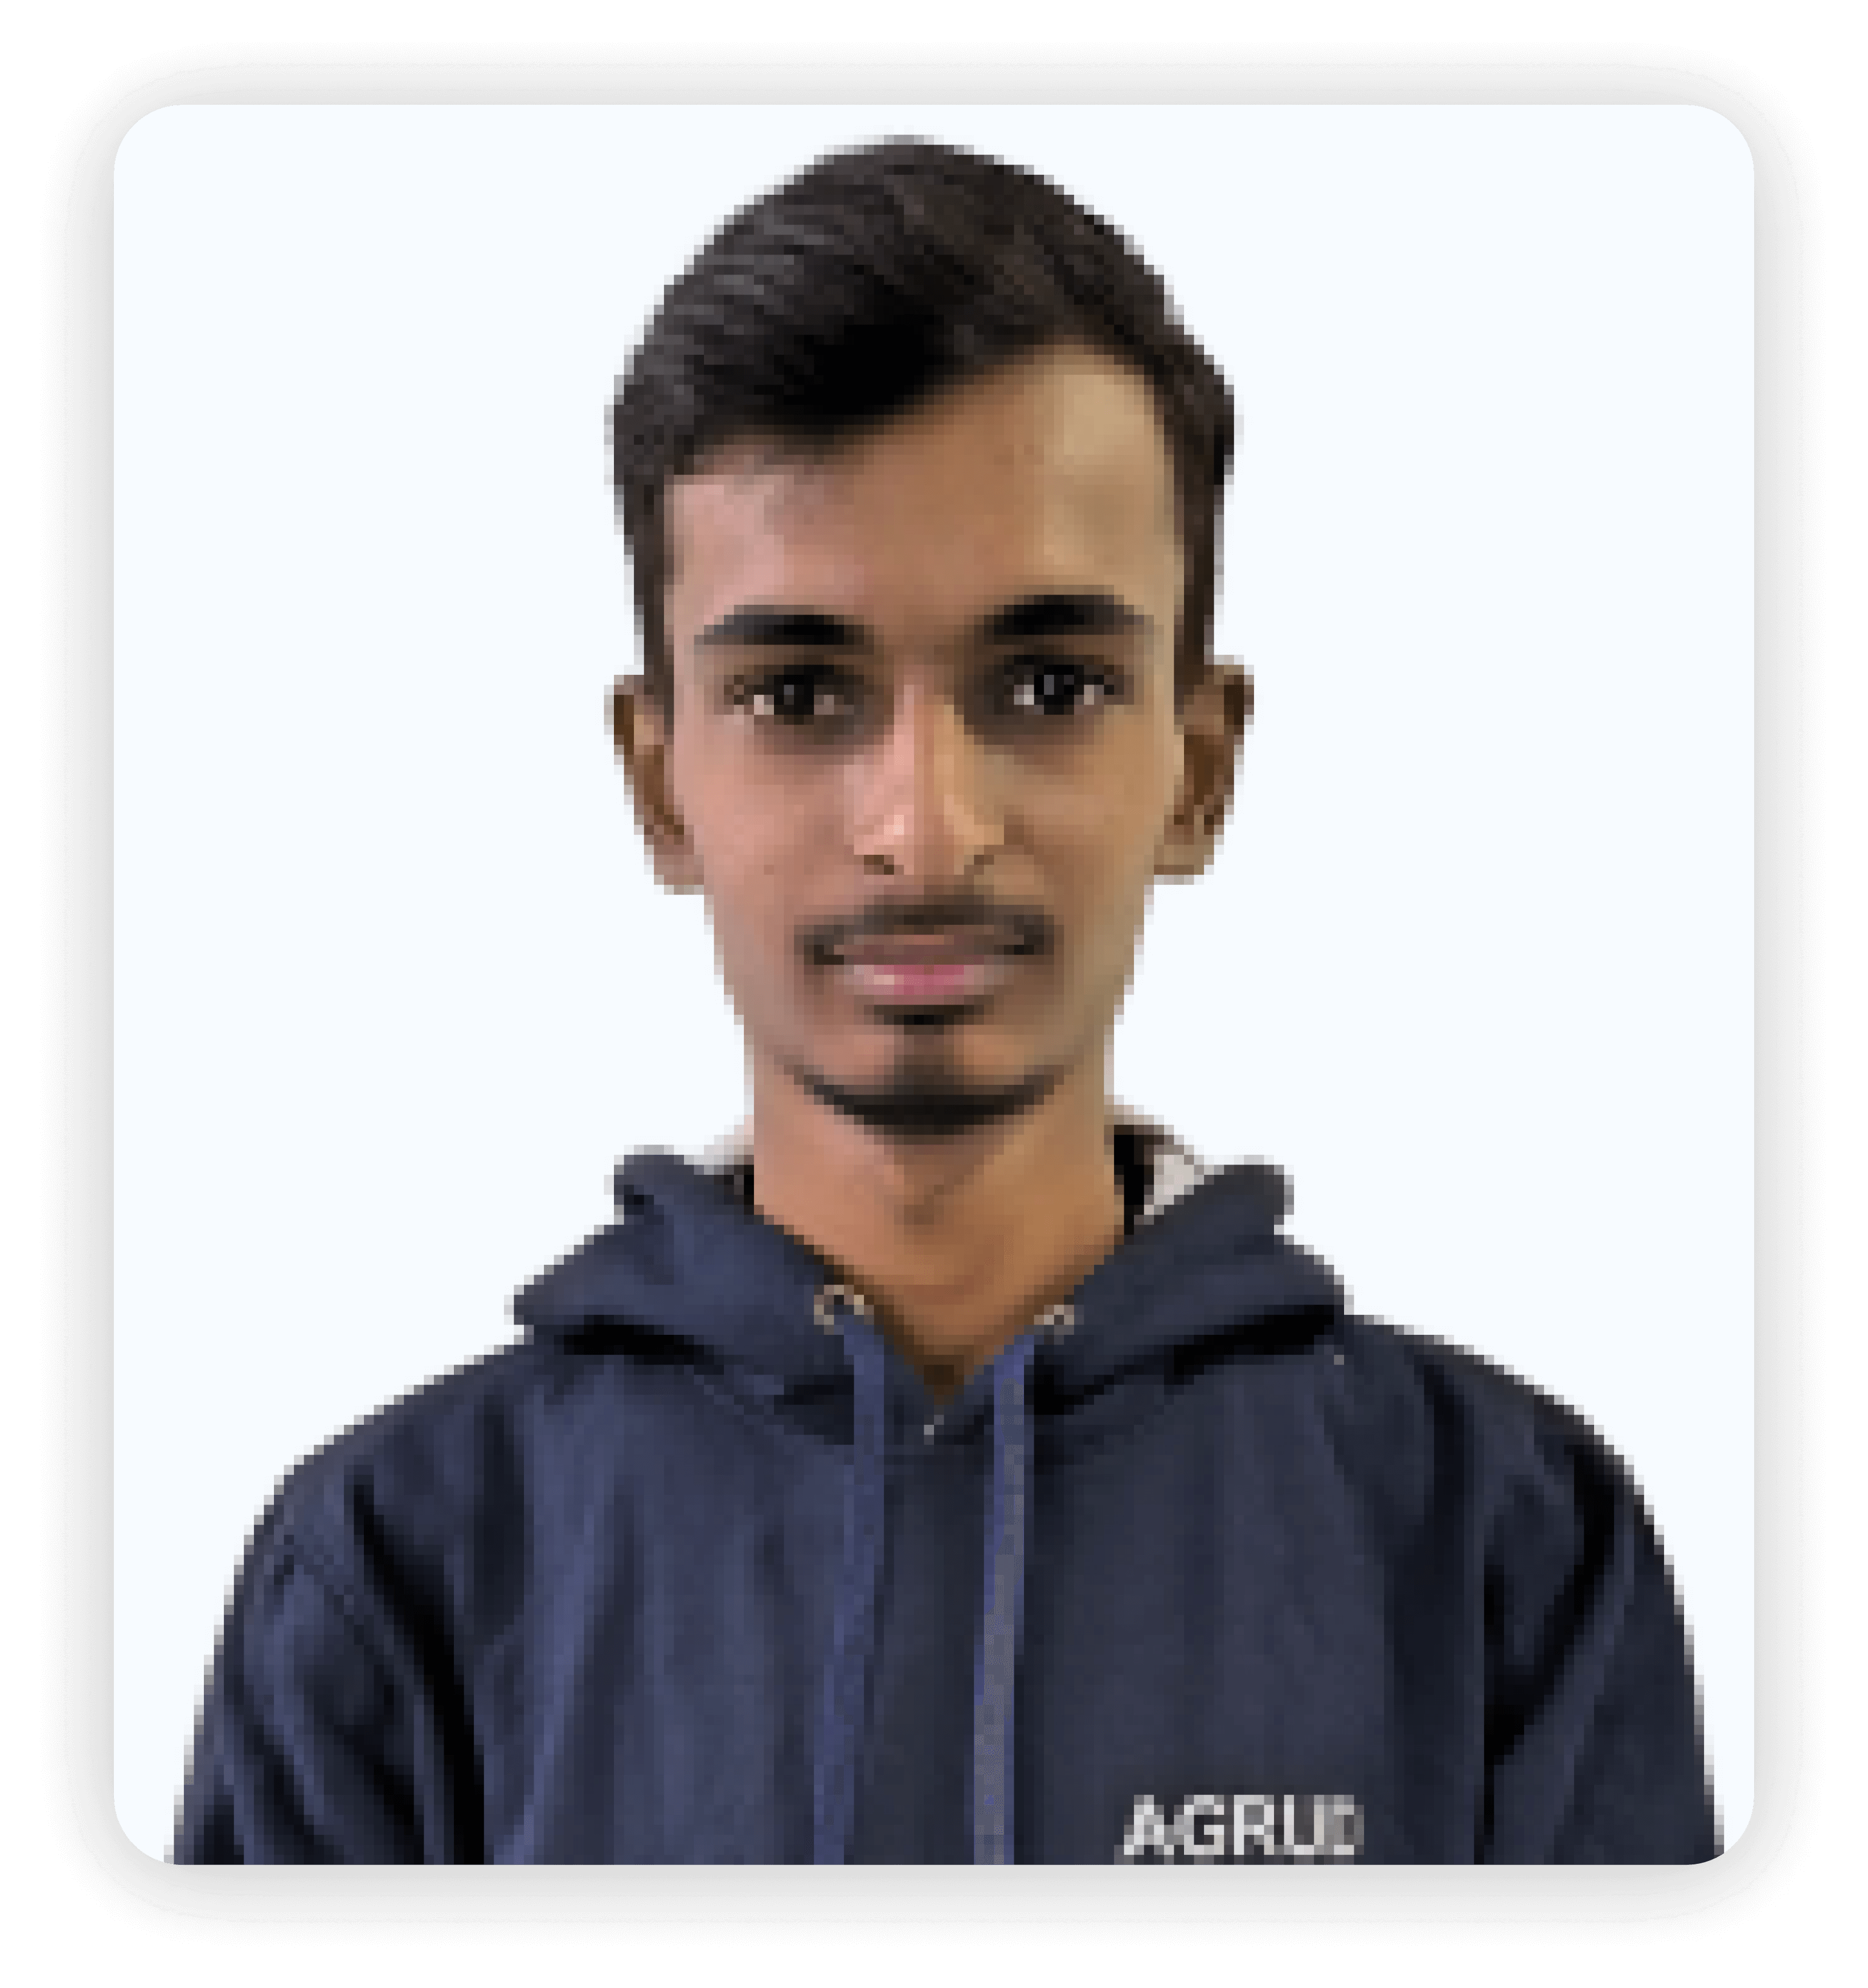 Pratik Gohil - Software Developer at Agrud Technologies